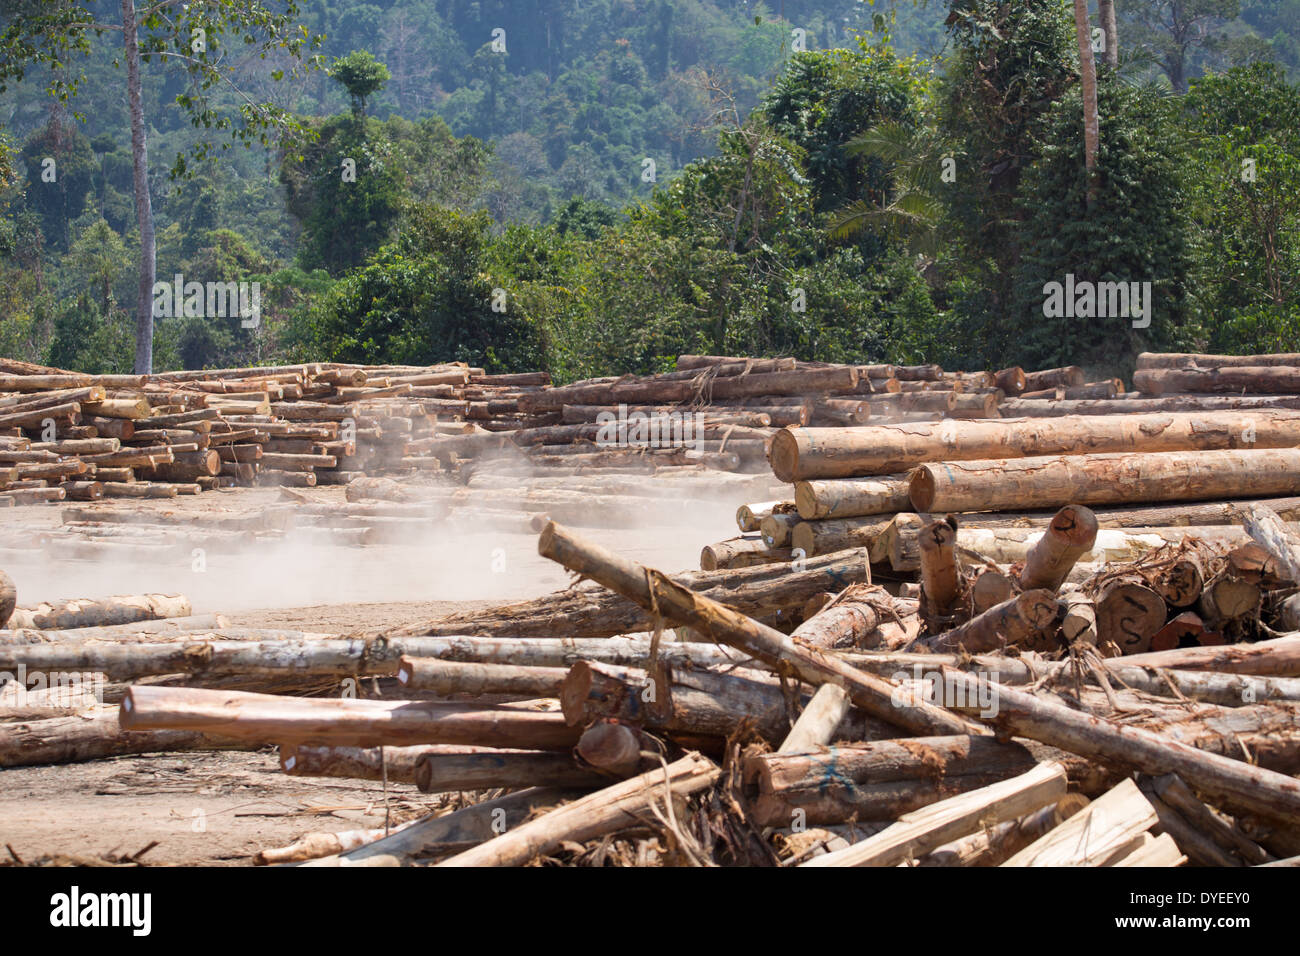 La madera, los troncos de los árboles talados, registros en un campamento maderero, rodeado por la selva secundaria de la provincia, Pahang, Malasia Foto de stock